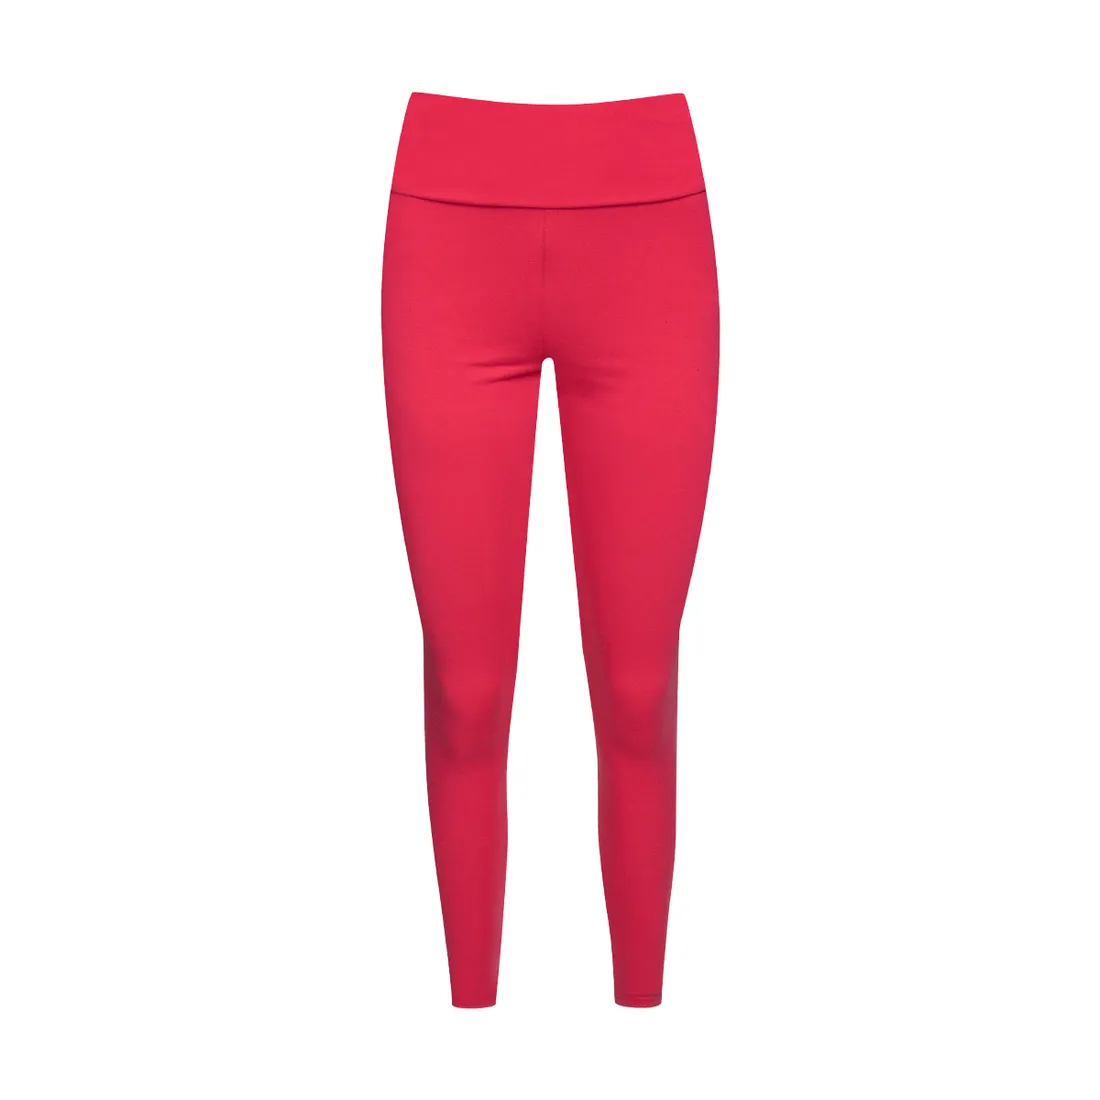 Wide waist leggings red - Women's Leggings | Ackermans